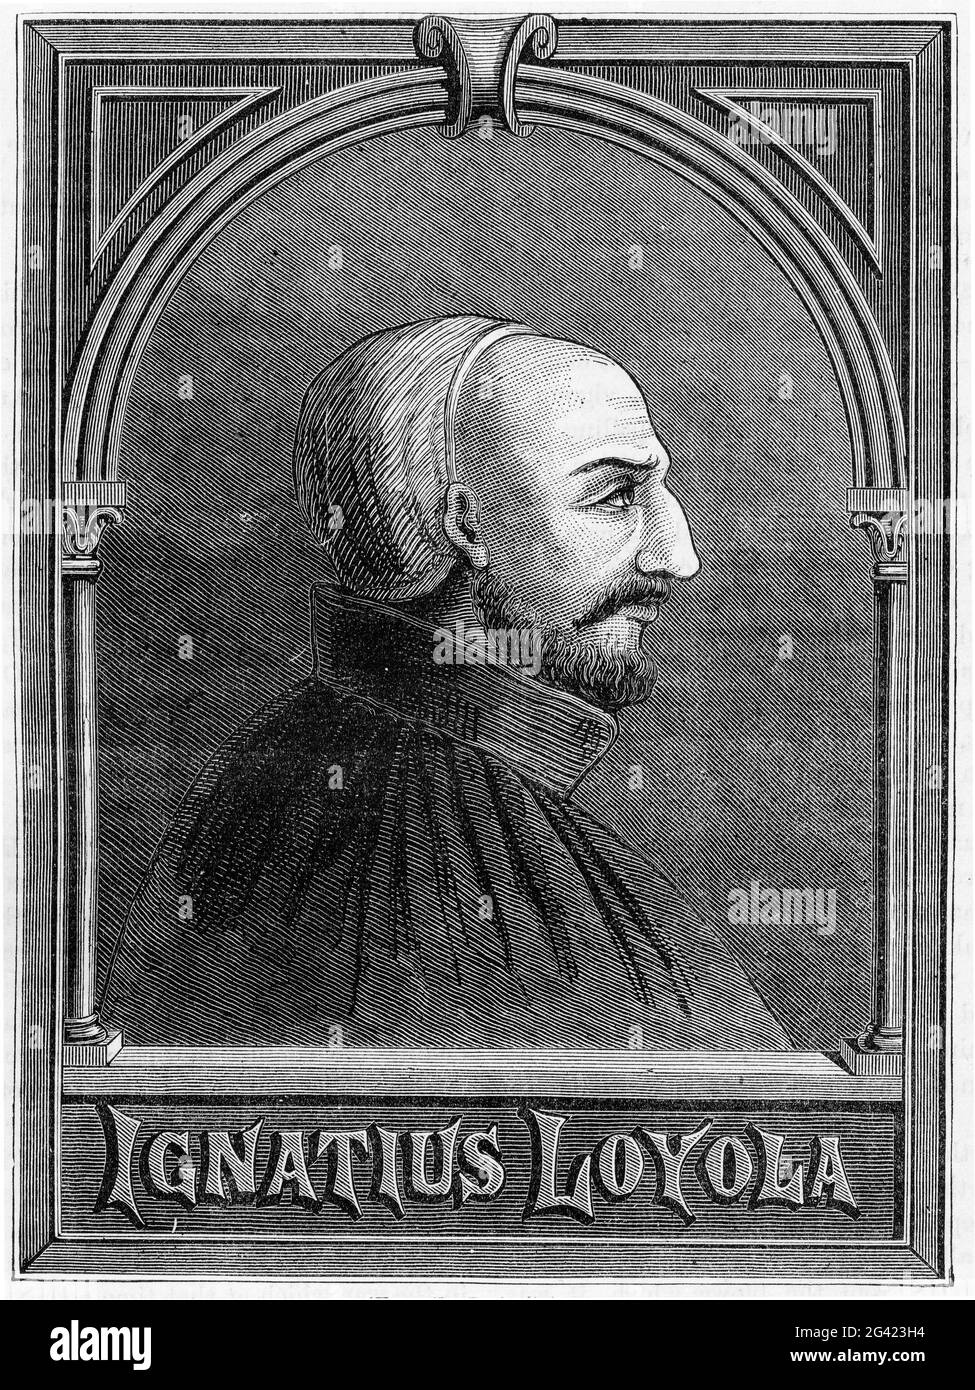 Incisione di Ignazio Loyola, fondatore dell'ordine cattolico militare romano, la Società di Gesù, normalmente conosciuta come Gesuiti Foto Stock